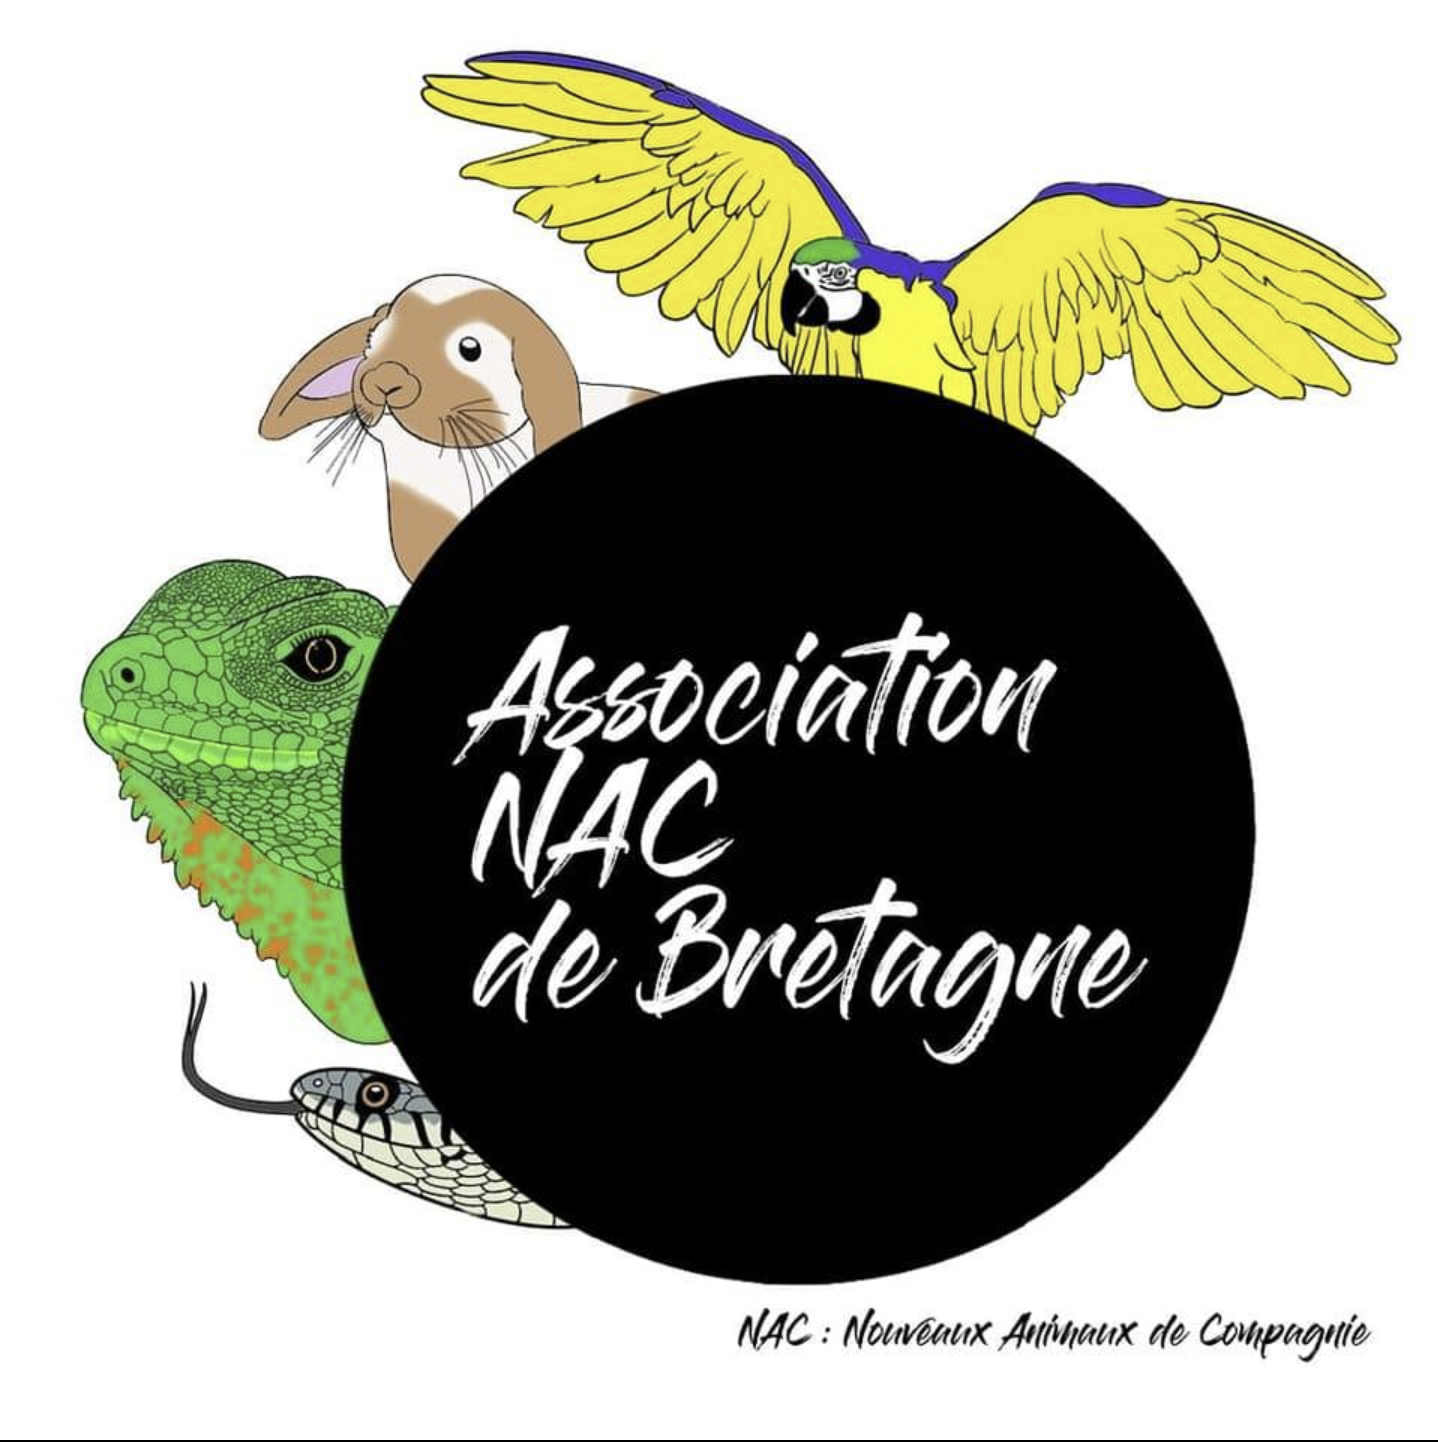 Association Nacs de Bretagne